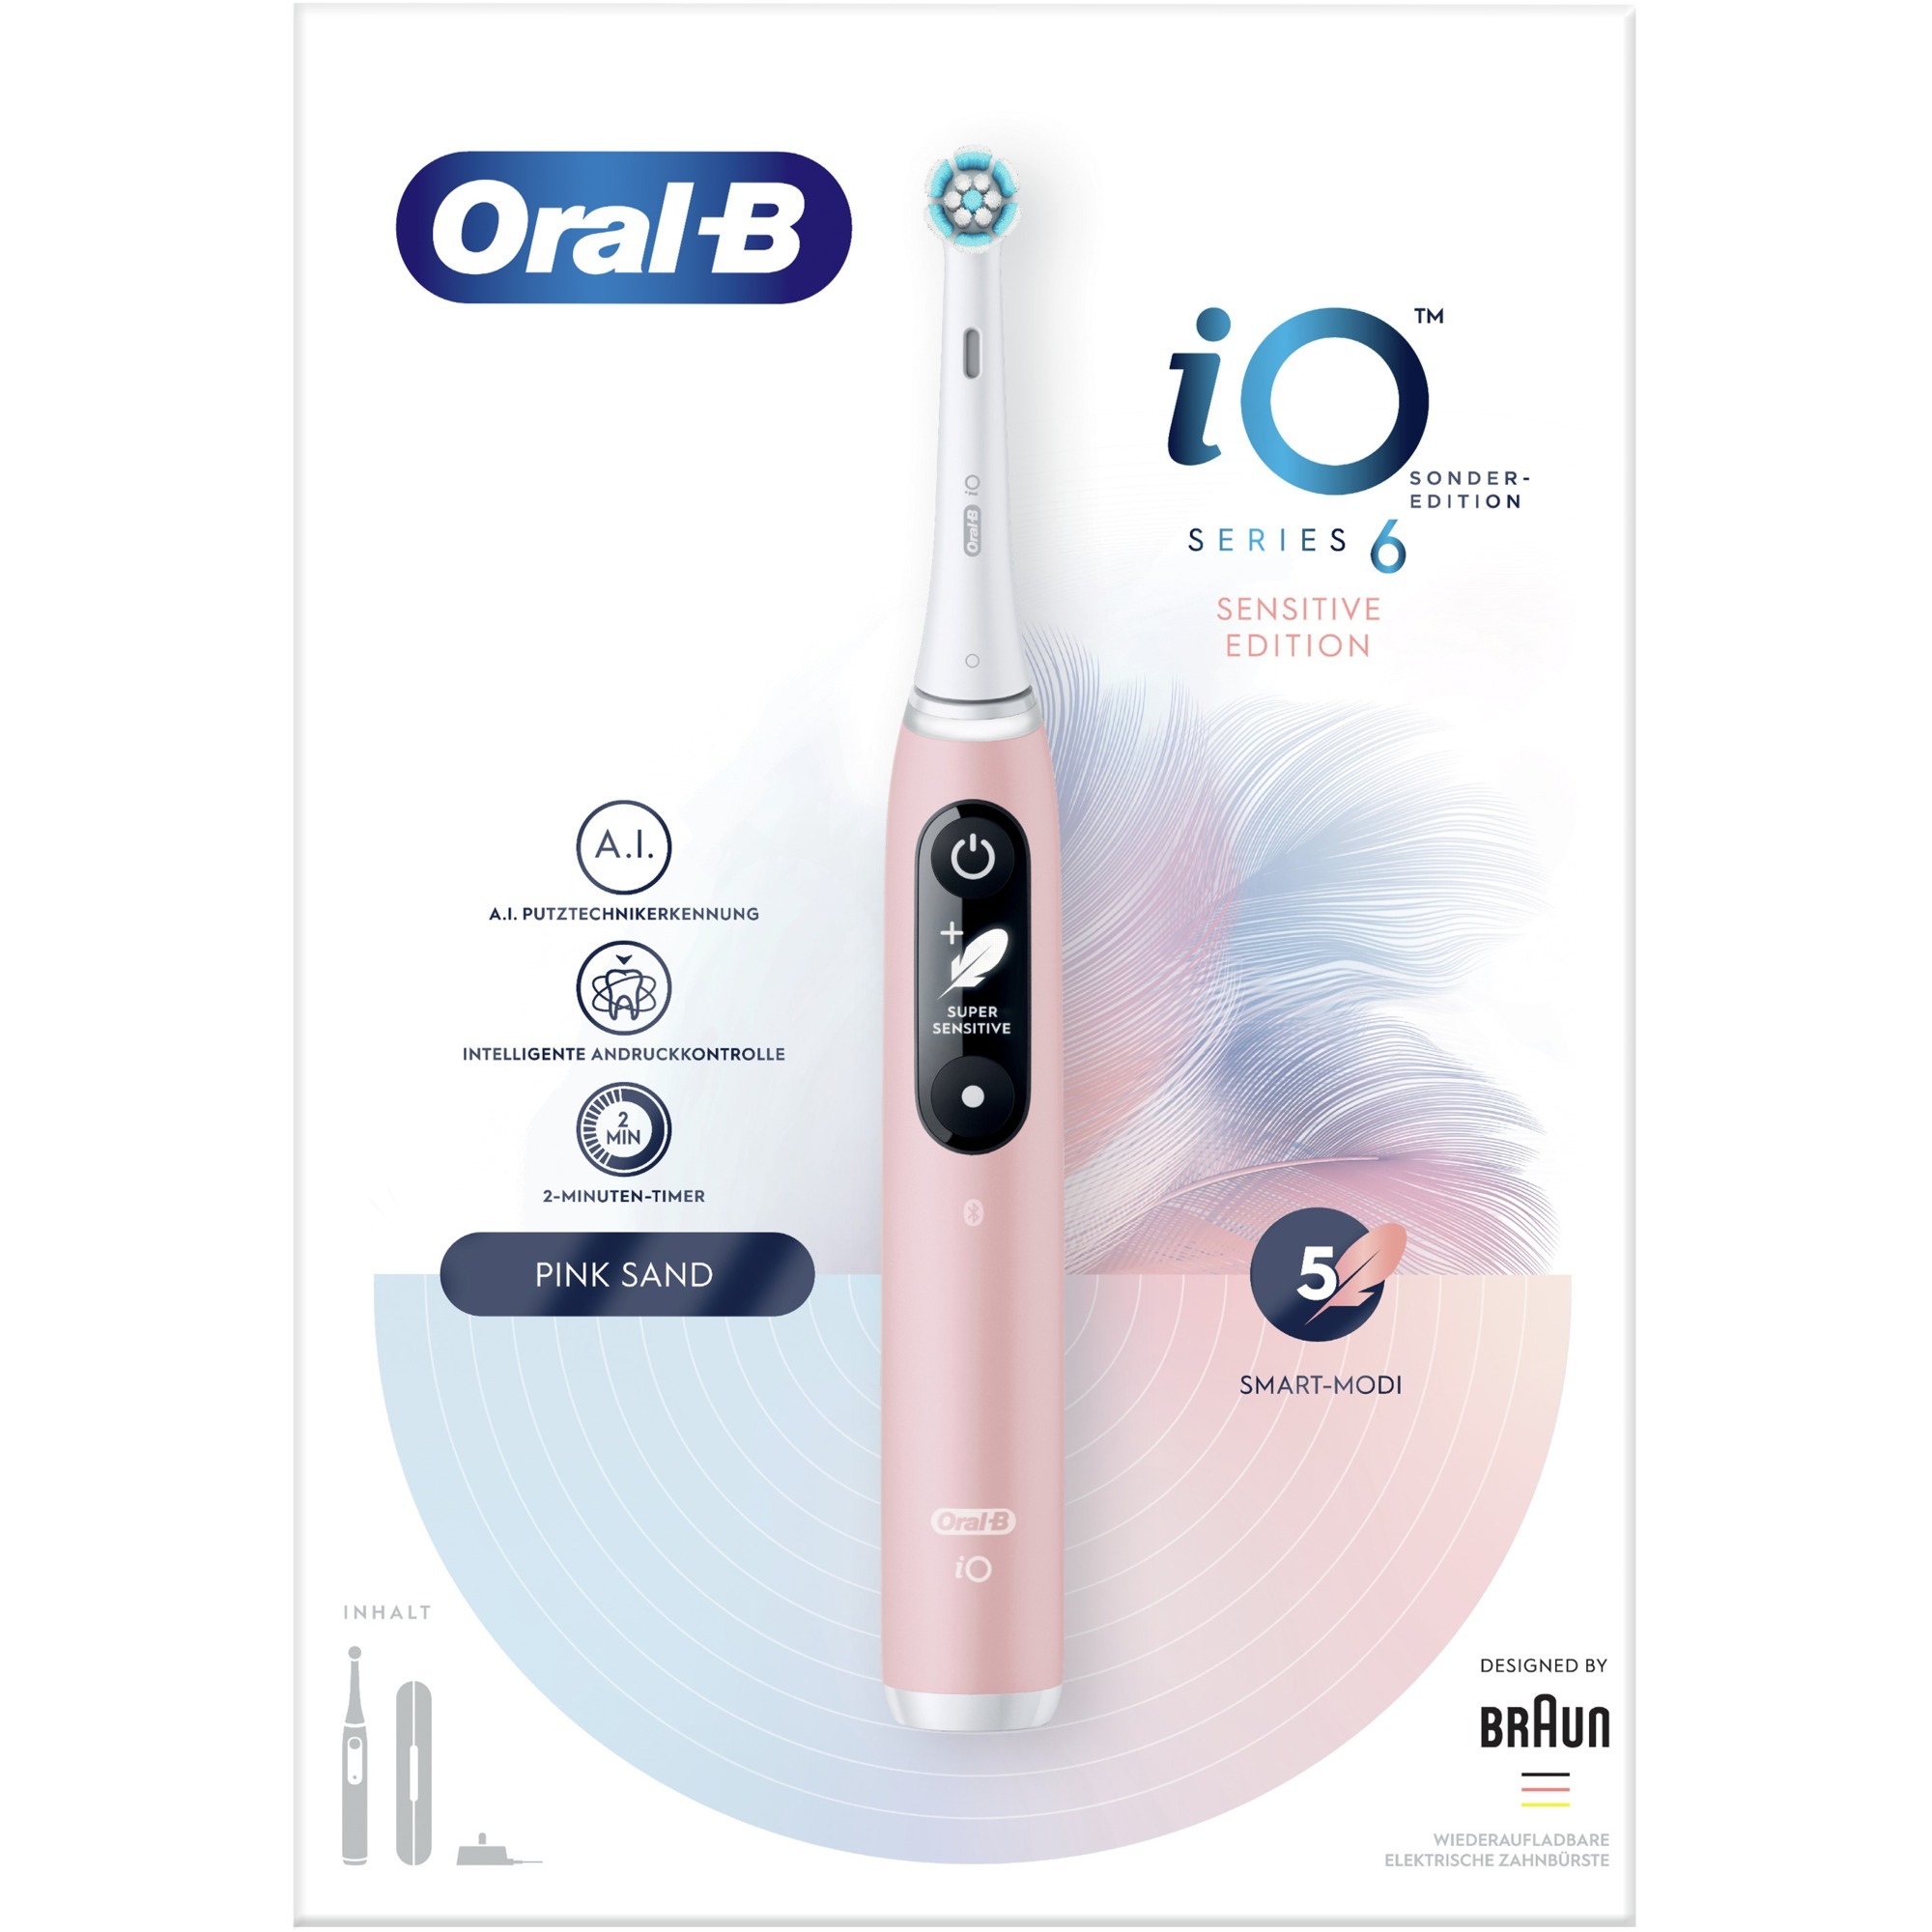 Image of Alternate - Oral-B iO Series 6 Sensitive Edition, Elektrische Zahnbürste online einkaufen bei Alternate